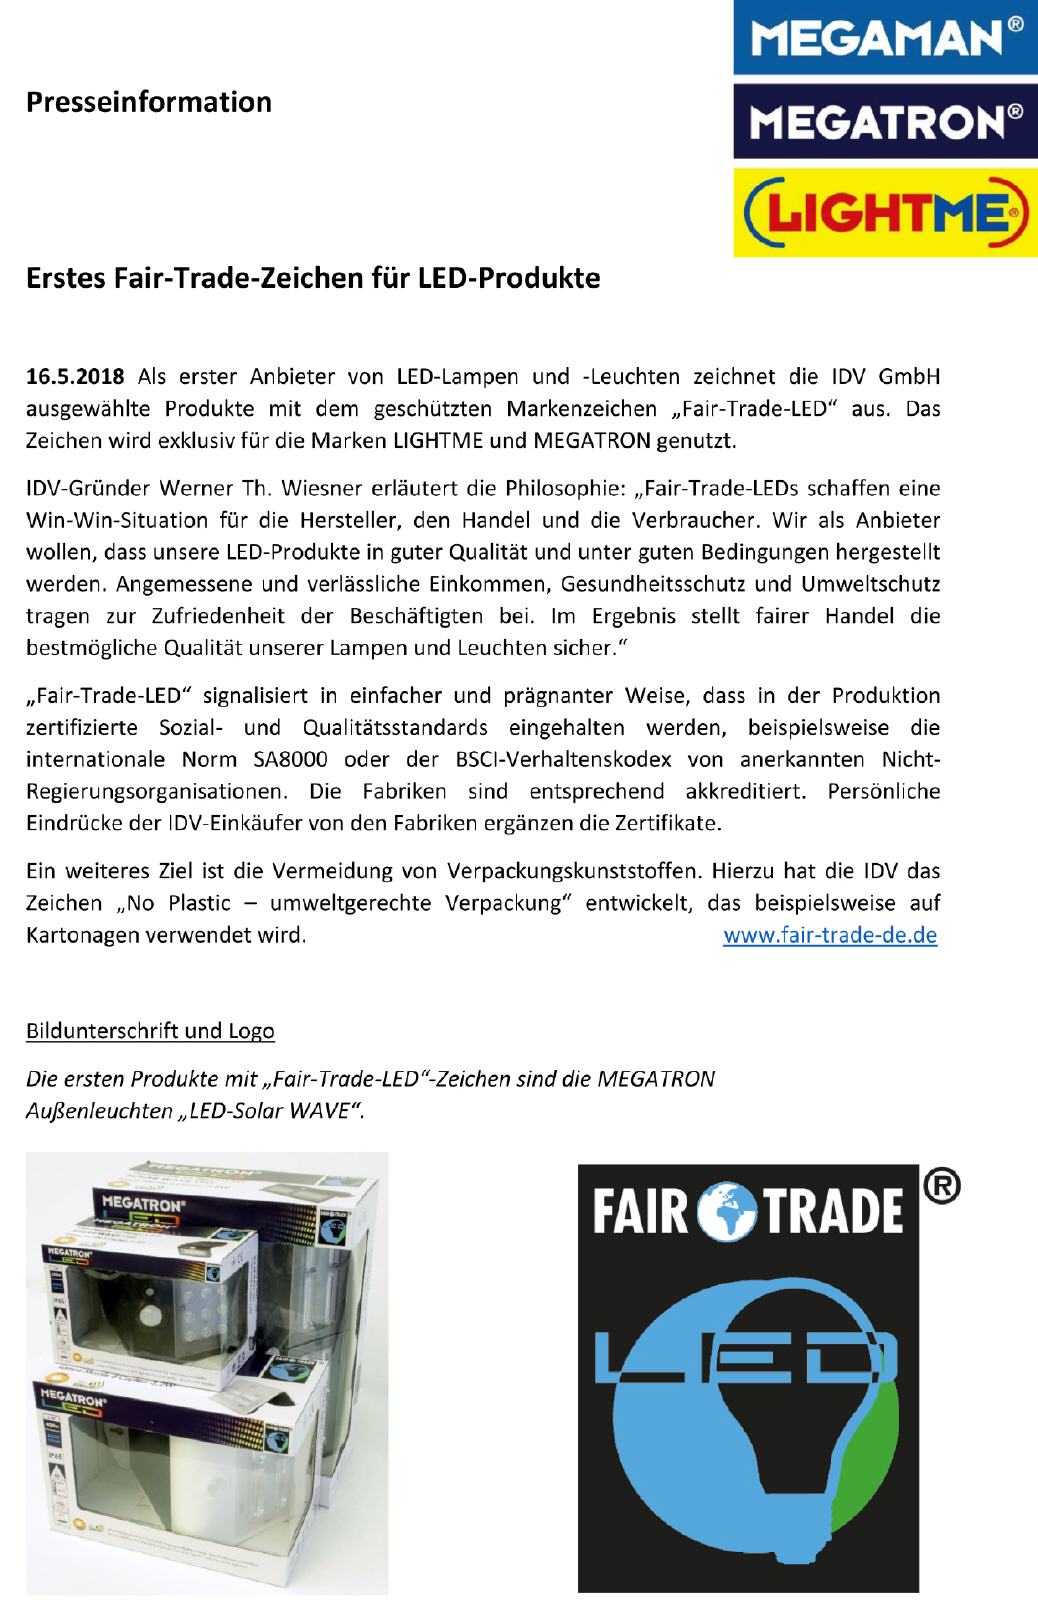 2018-05 Presseinfo zum Start von Fair-Trade-LED